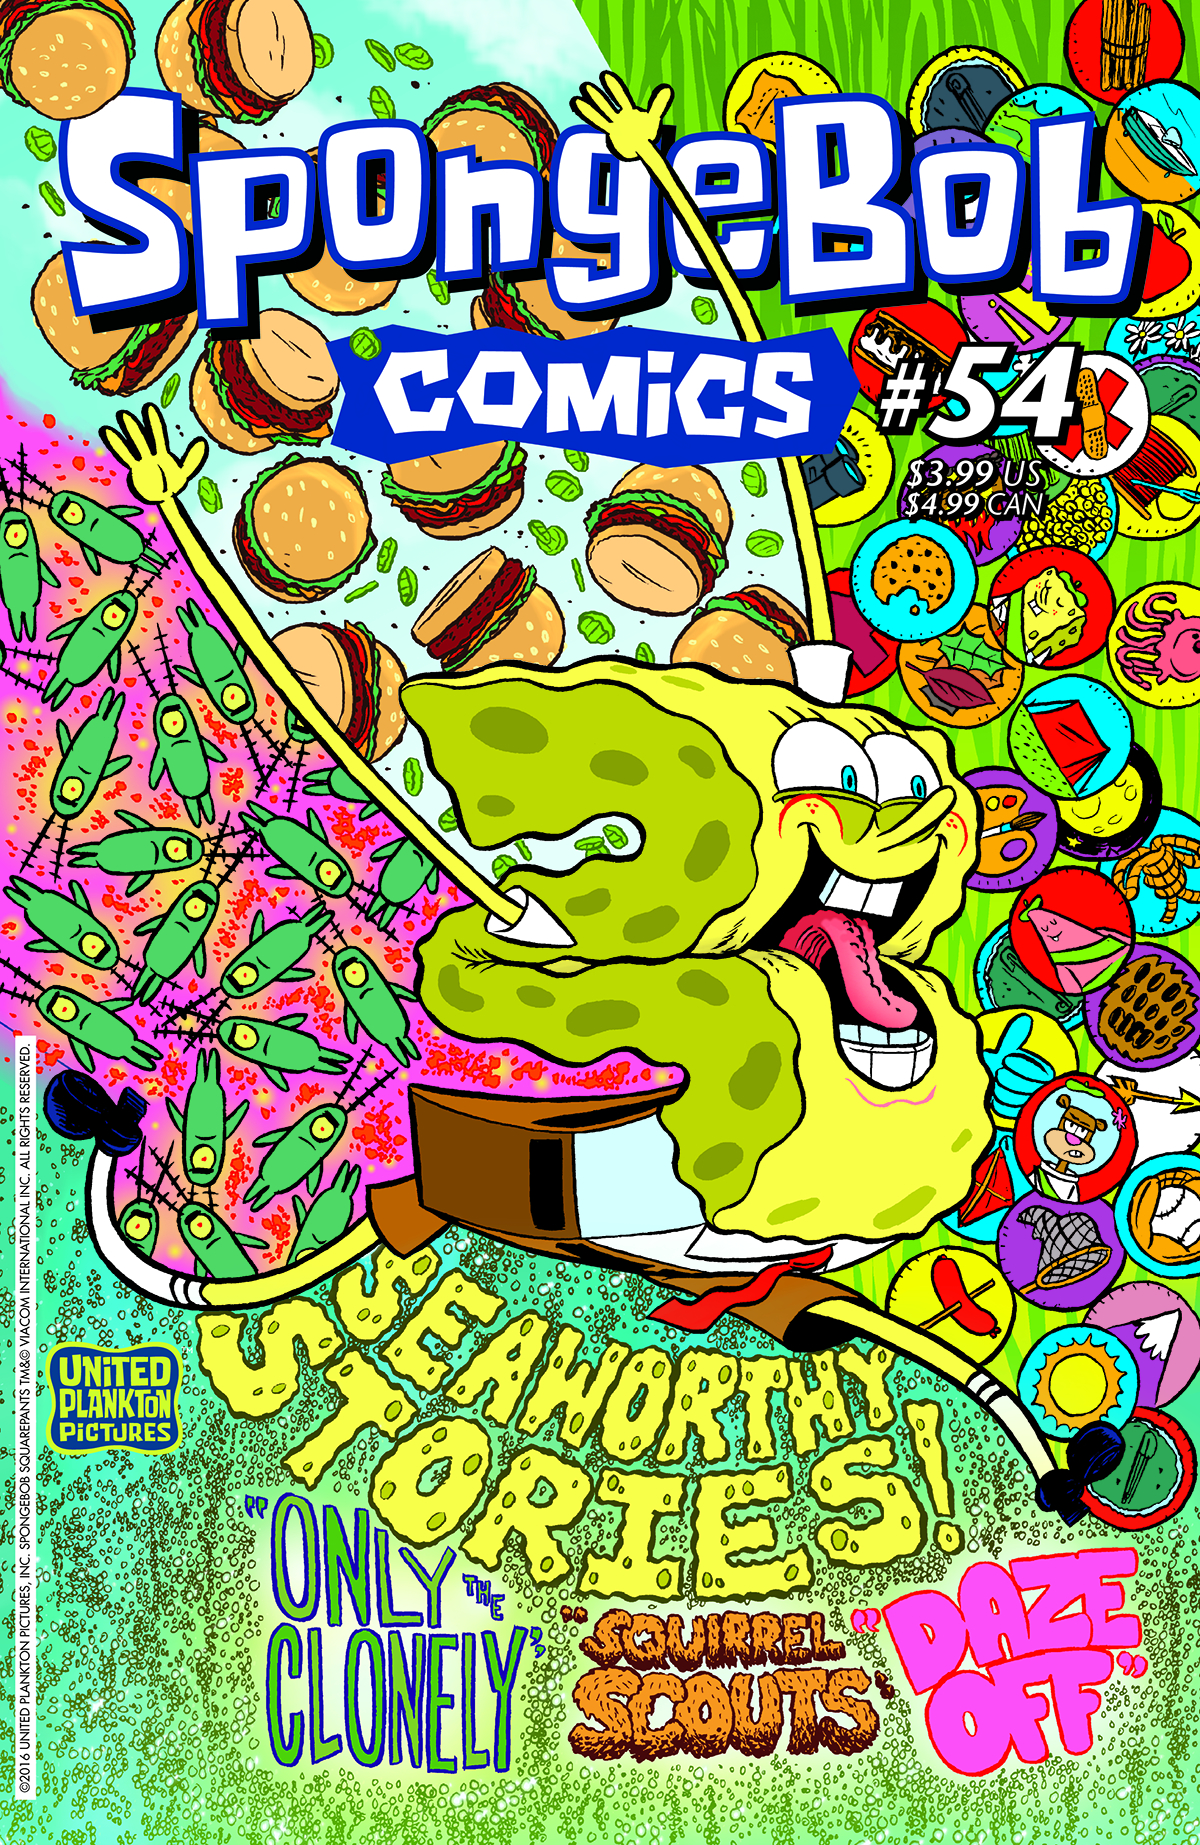 SPONGEBOB COMICS #54